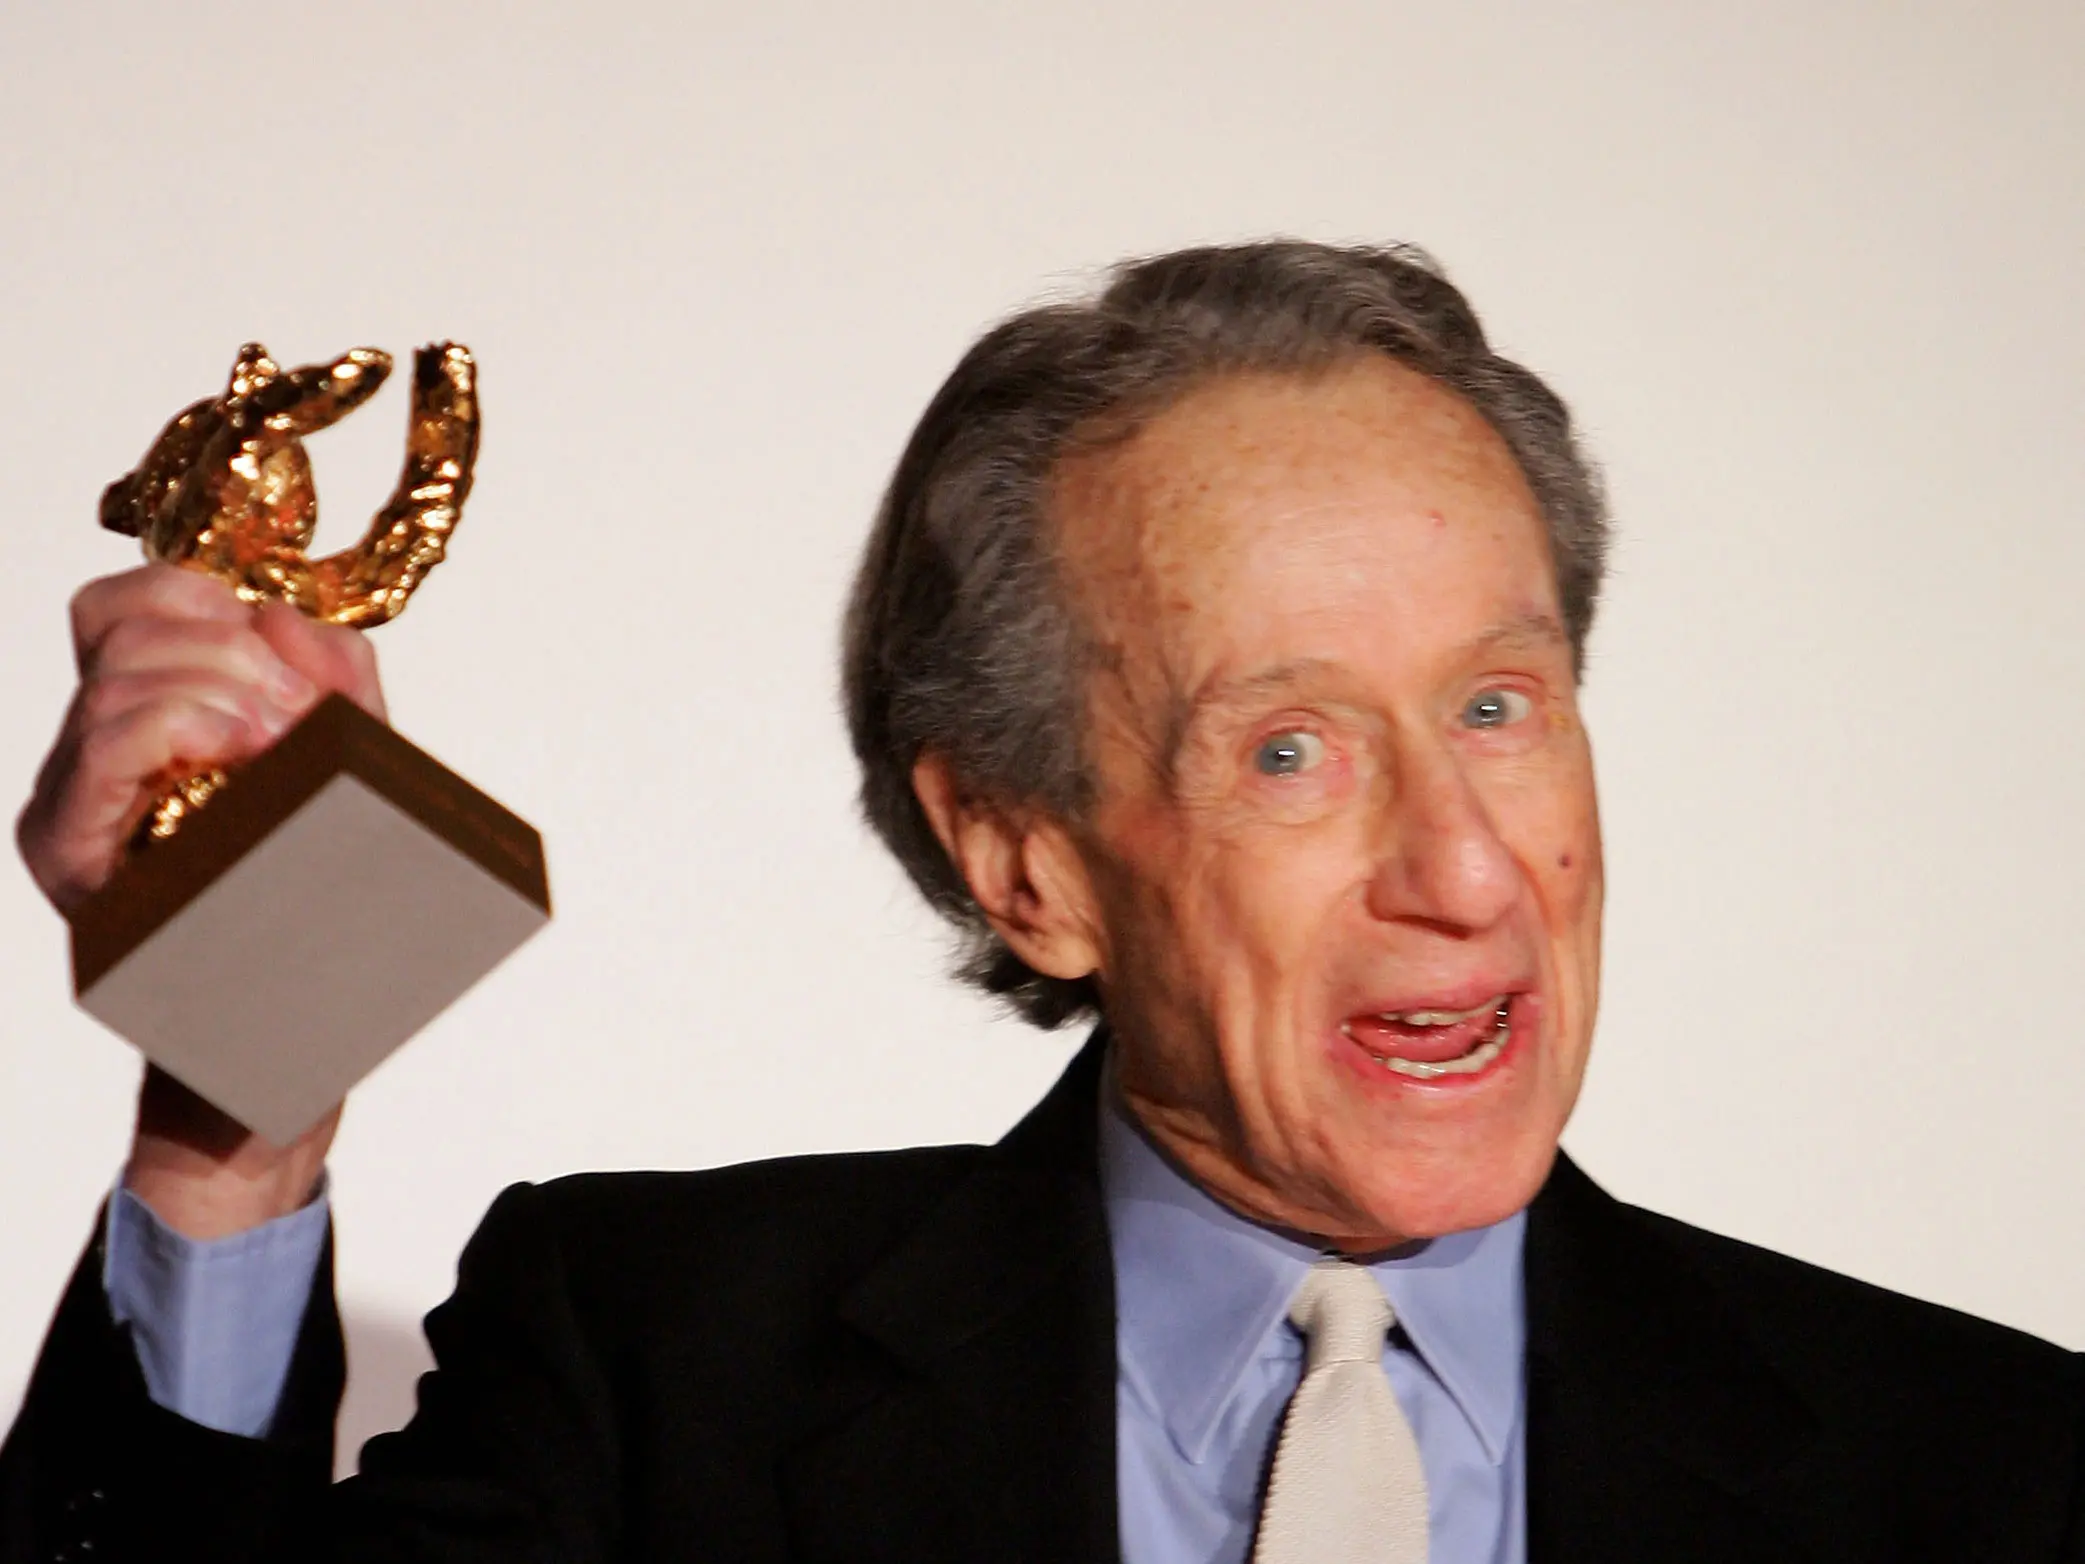 יהי זכרו ברוך. ארתור פן, מקבל פרס מפעל חיים מפסטיבל ברלין בשנת 2007